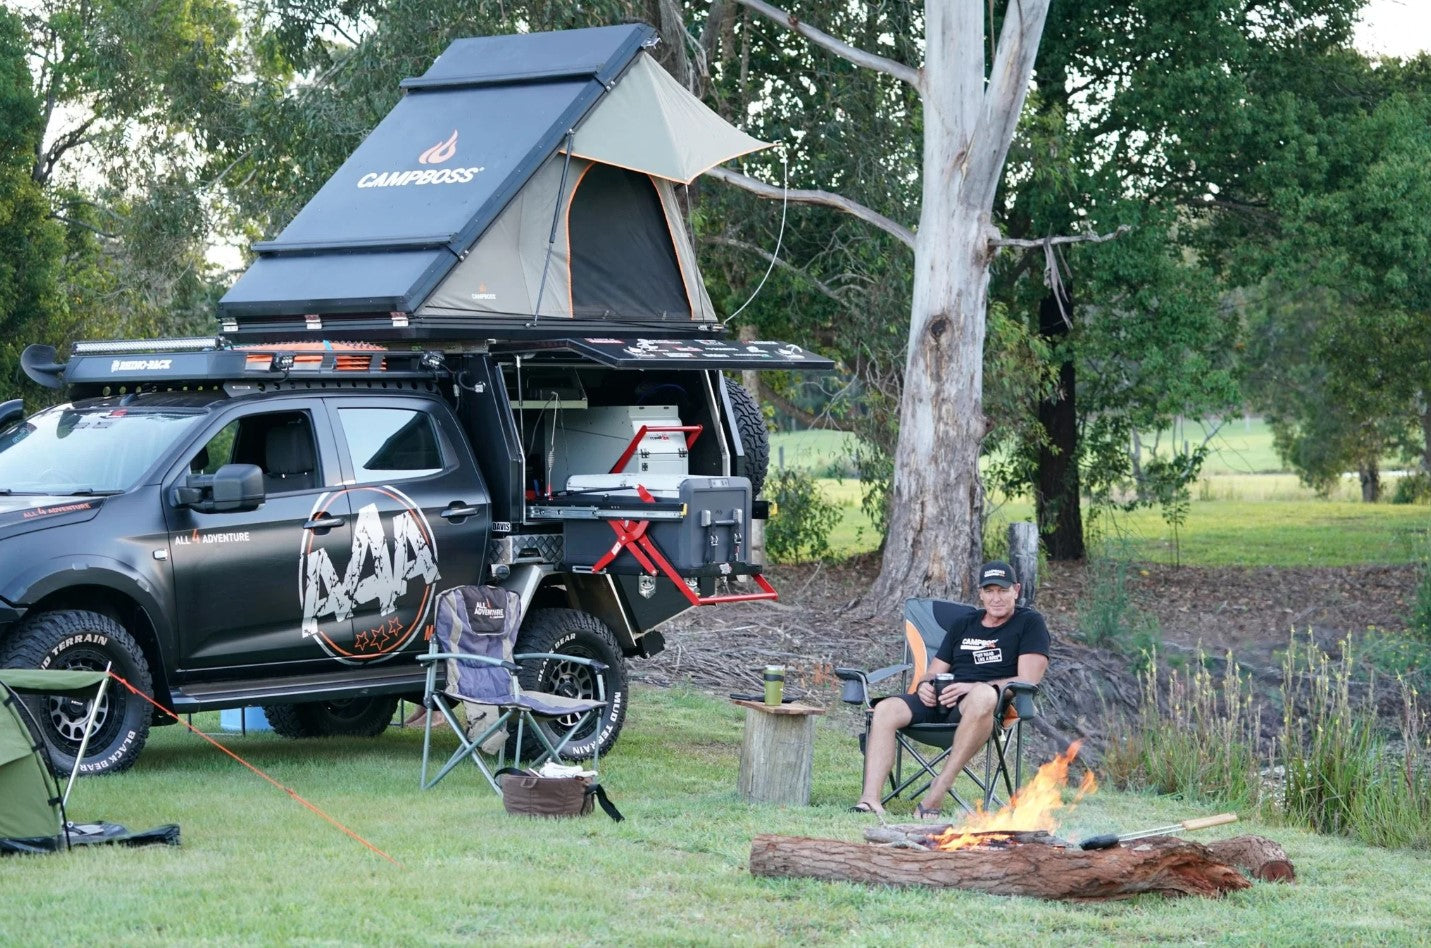 Un uomo che si gode il suo spazio in campeggio con la sua 4x4 e una tenda da tetto rigida in alluminio Campboss